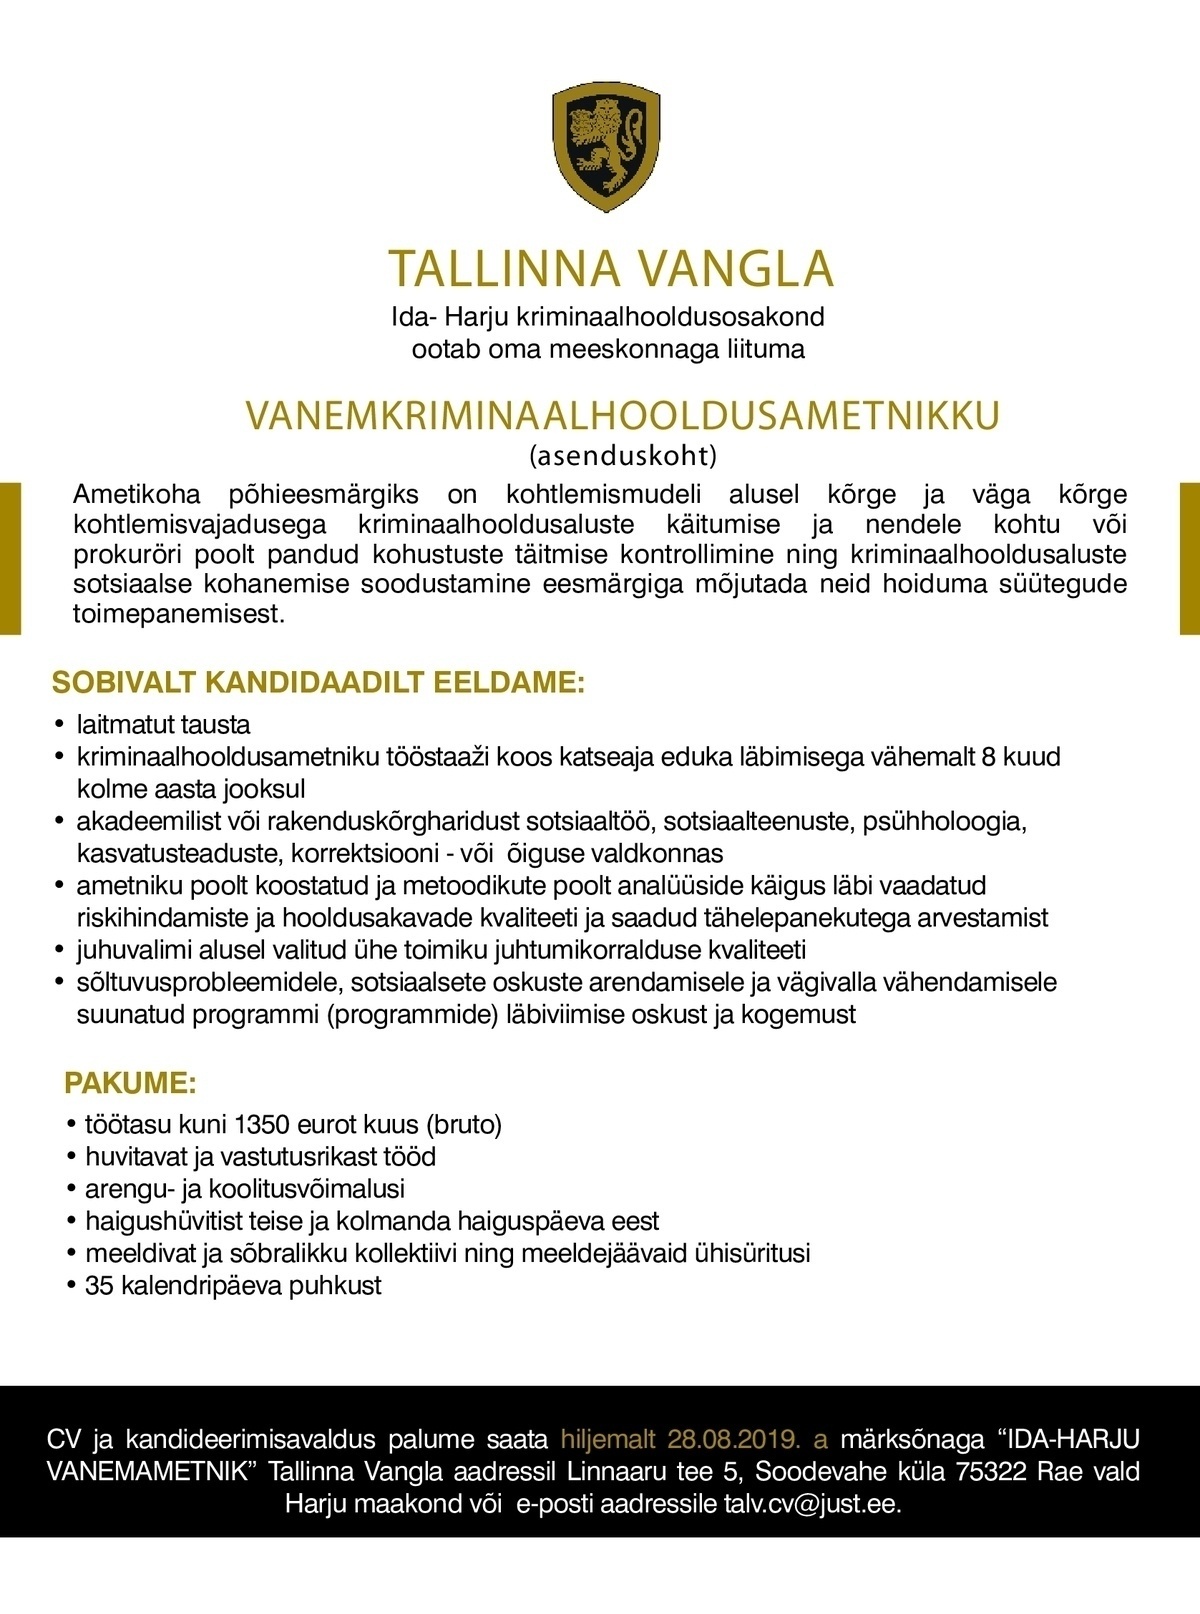 Tallinna Vangla  (Asenduskoht) Ida - Harju Vanemkriminaalhooldusametnik